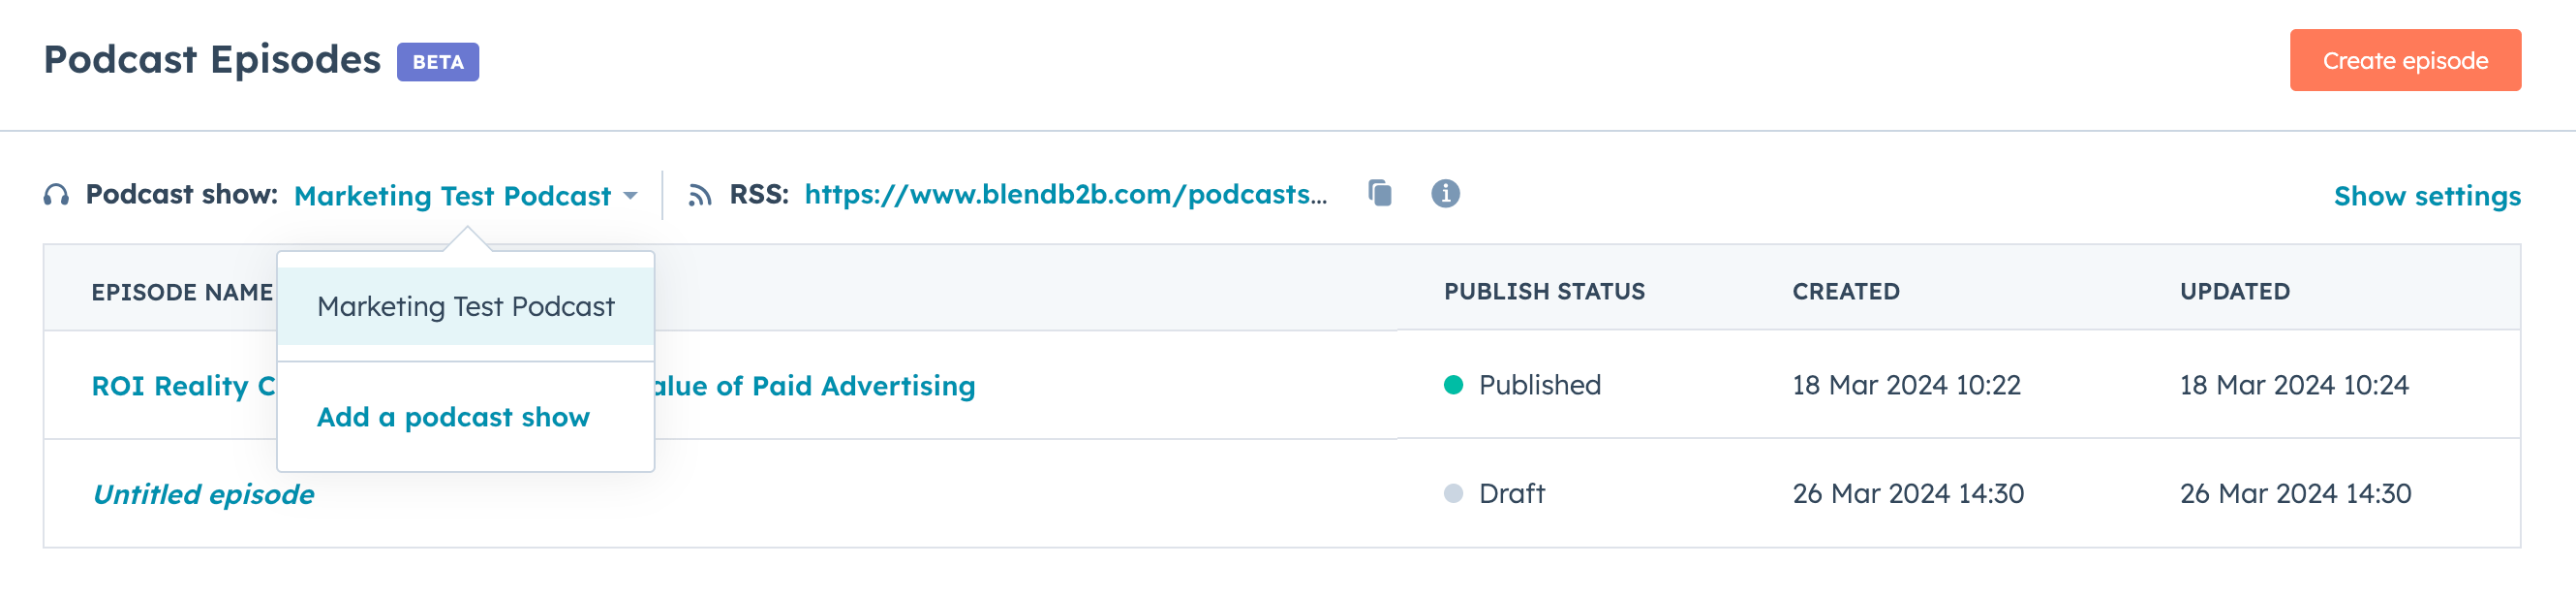 hubspot-podcasts-content-hub-min